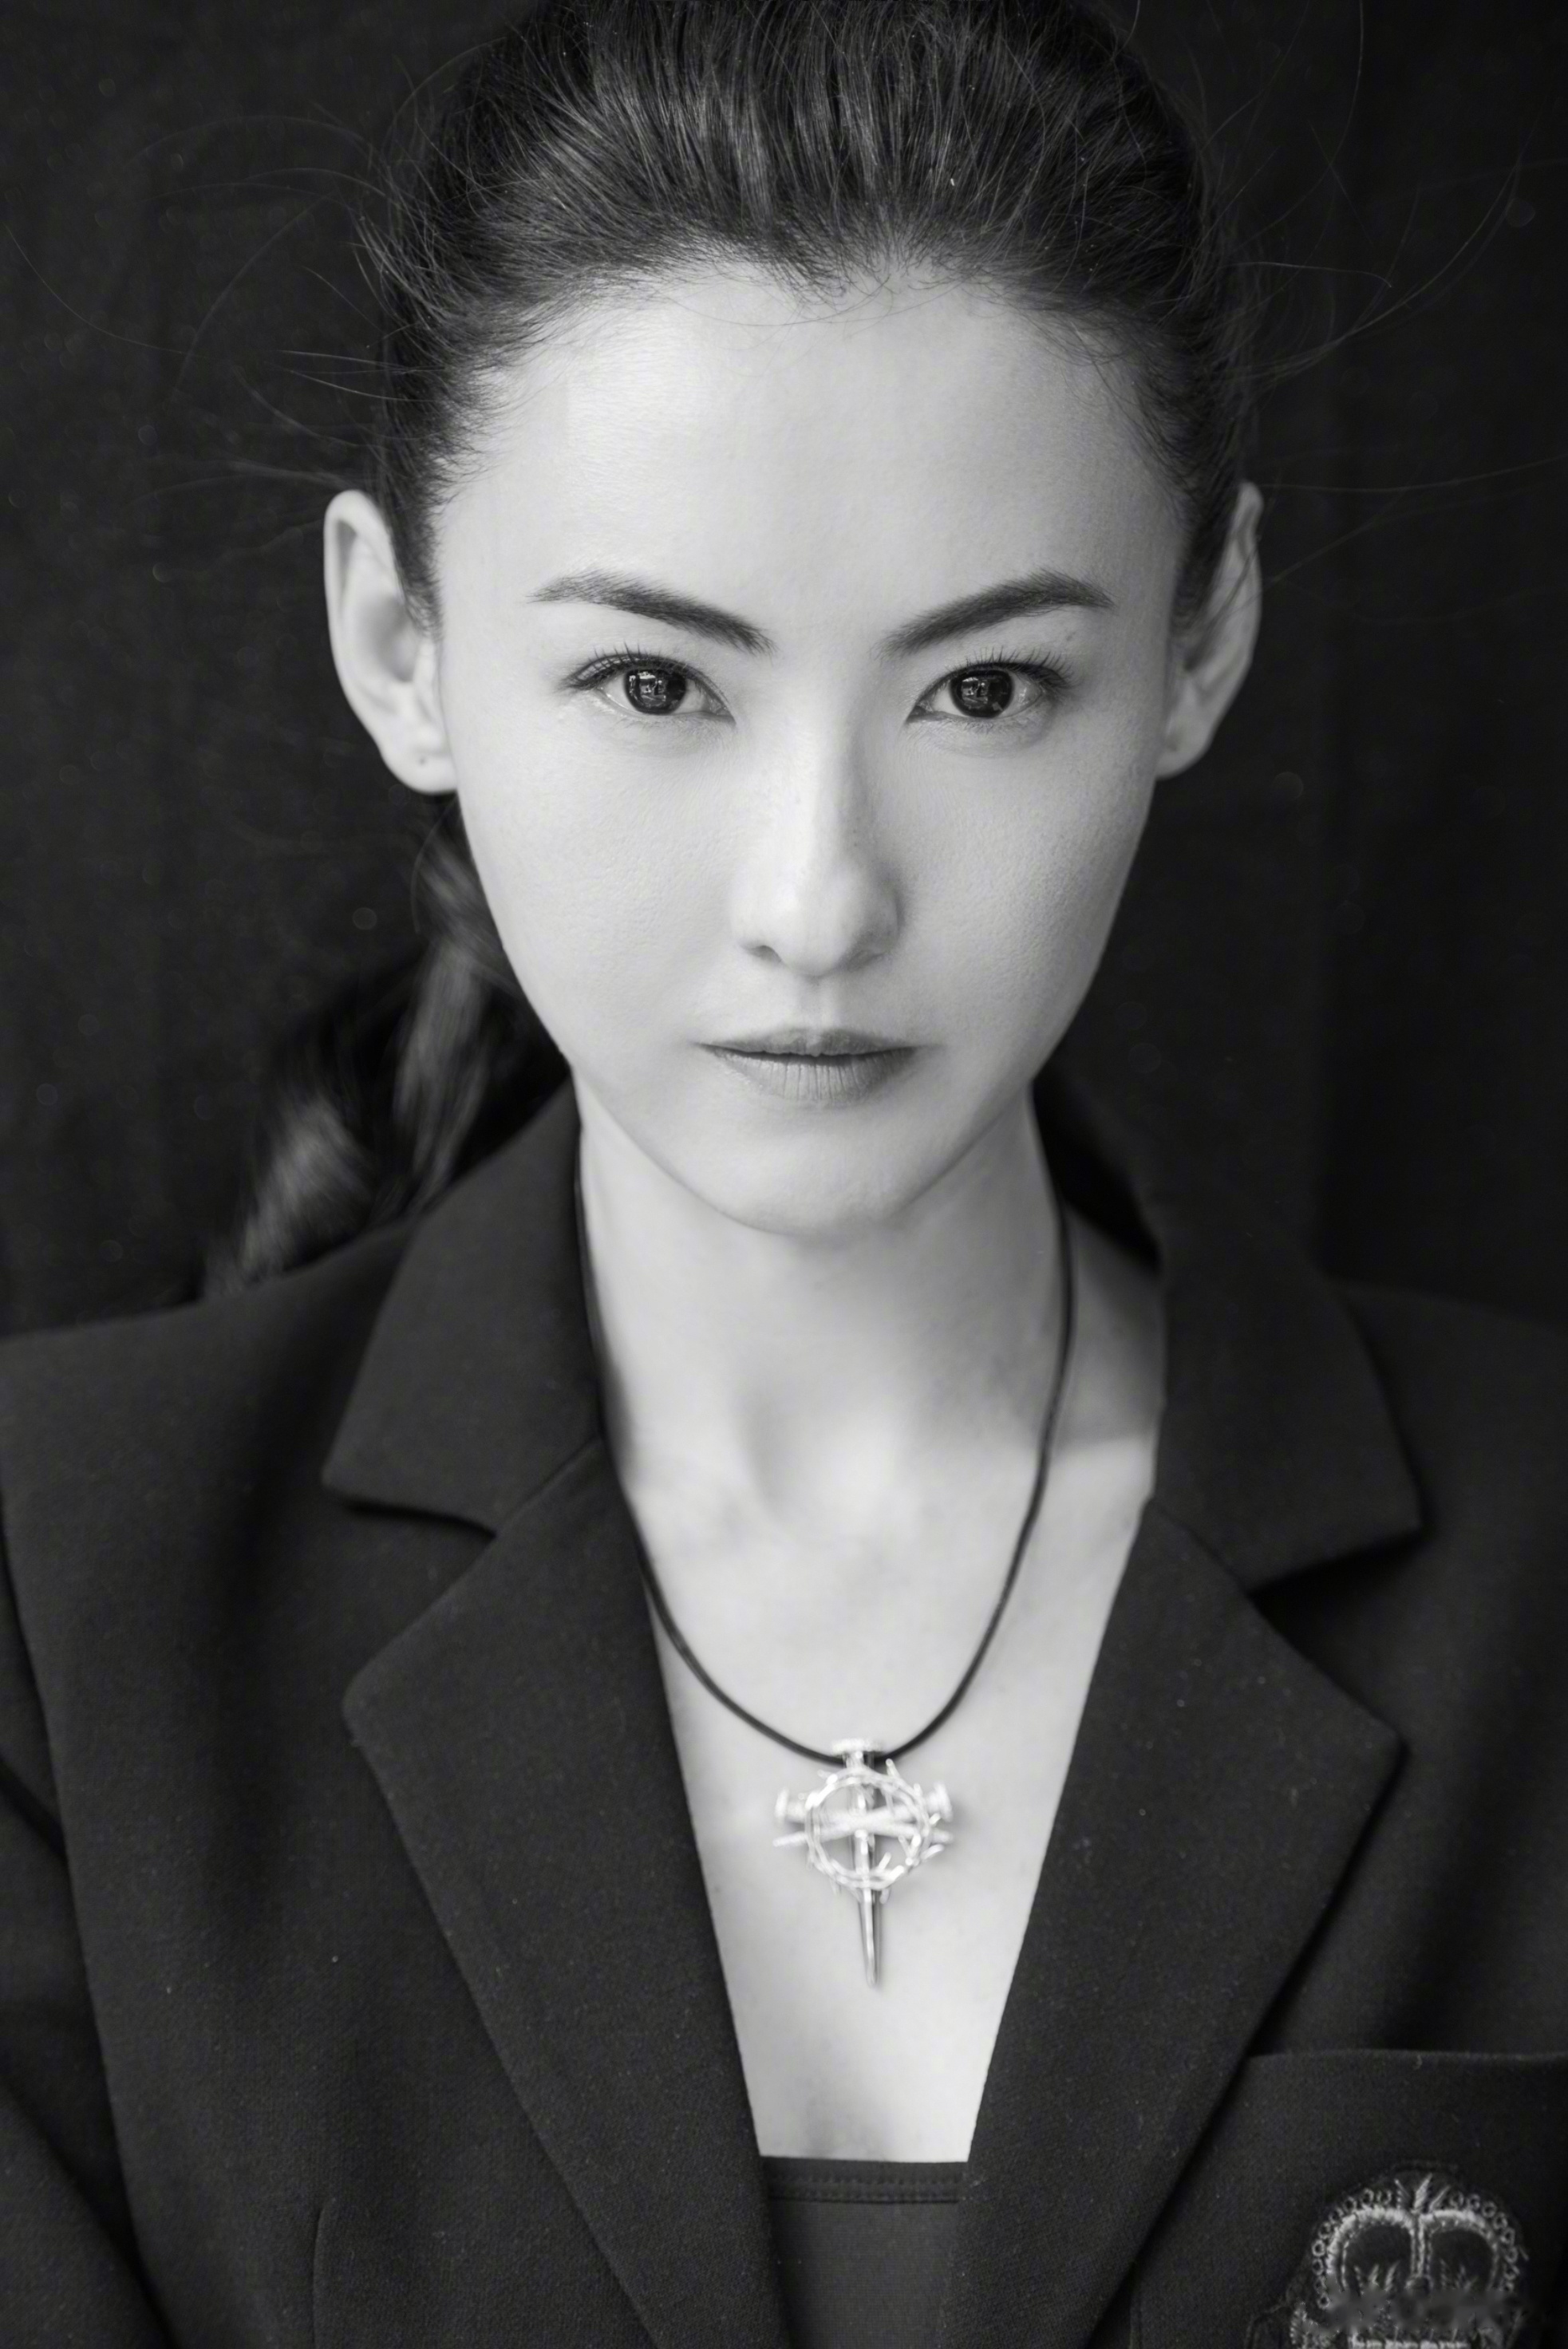 近日,张柏芝公开一组黑白肖像大片,线条硬朗的中性风格与柔软细腻的